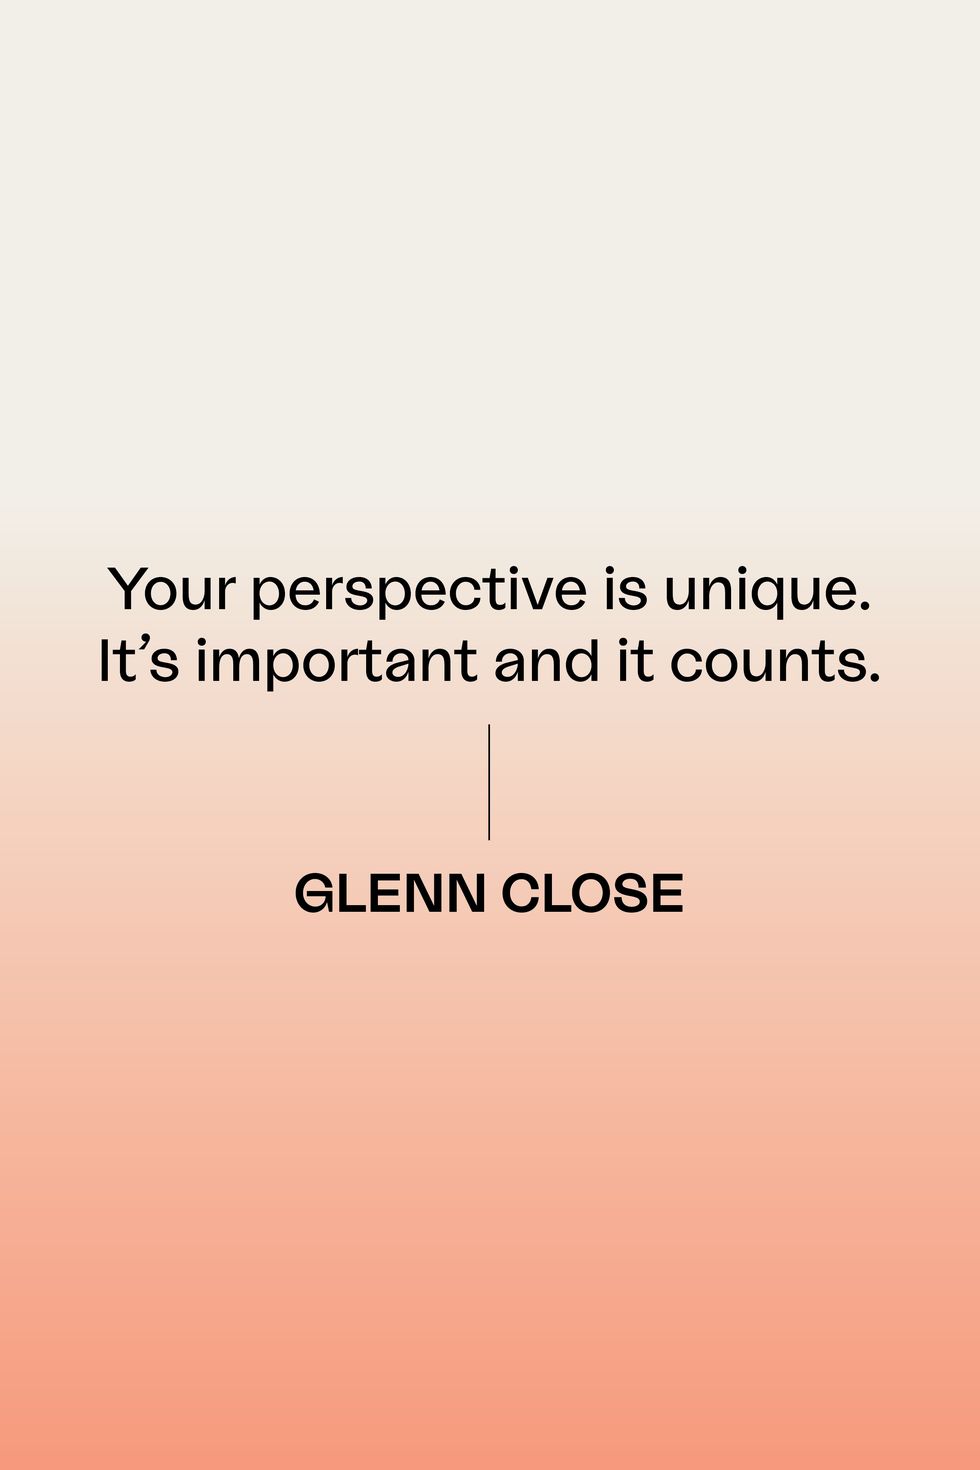 glenn close quote